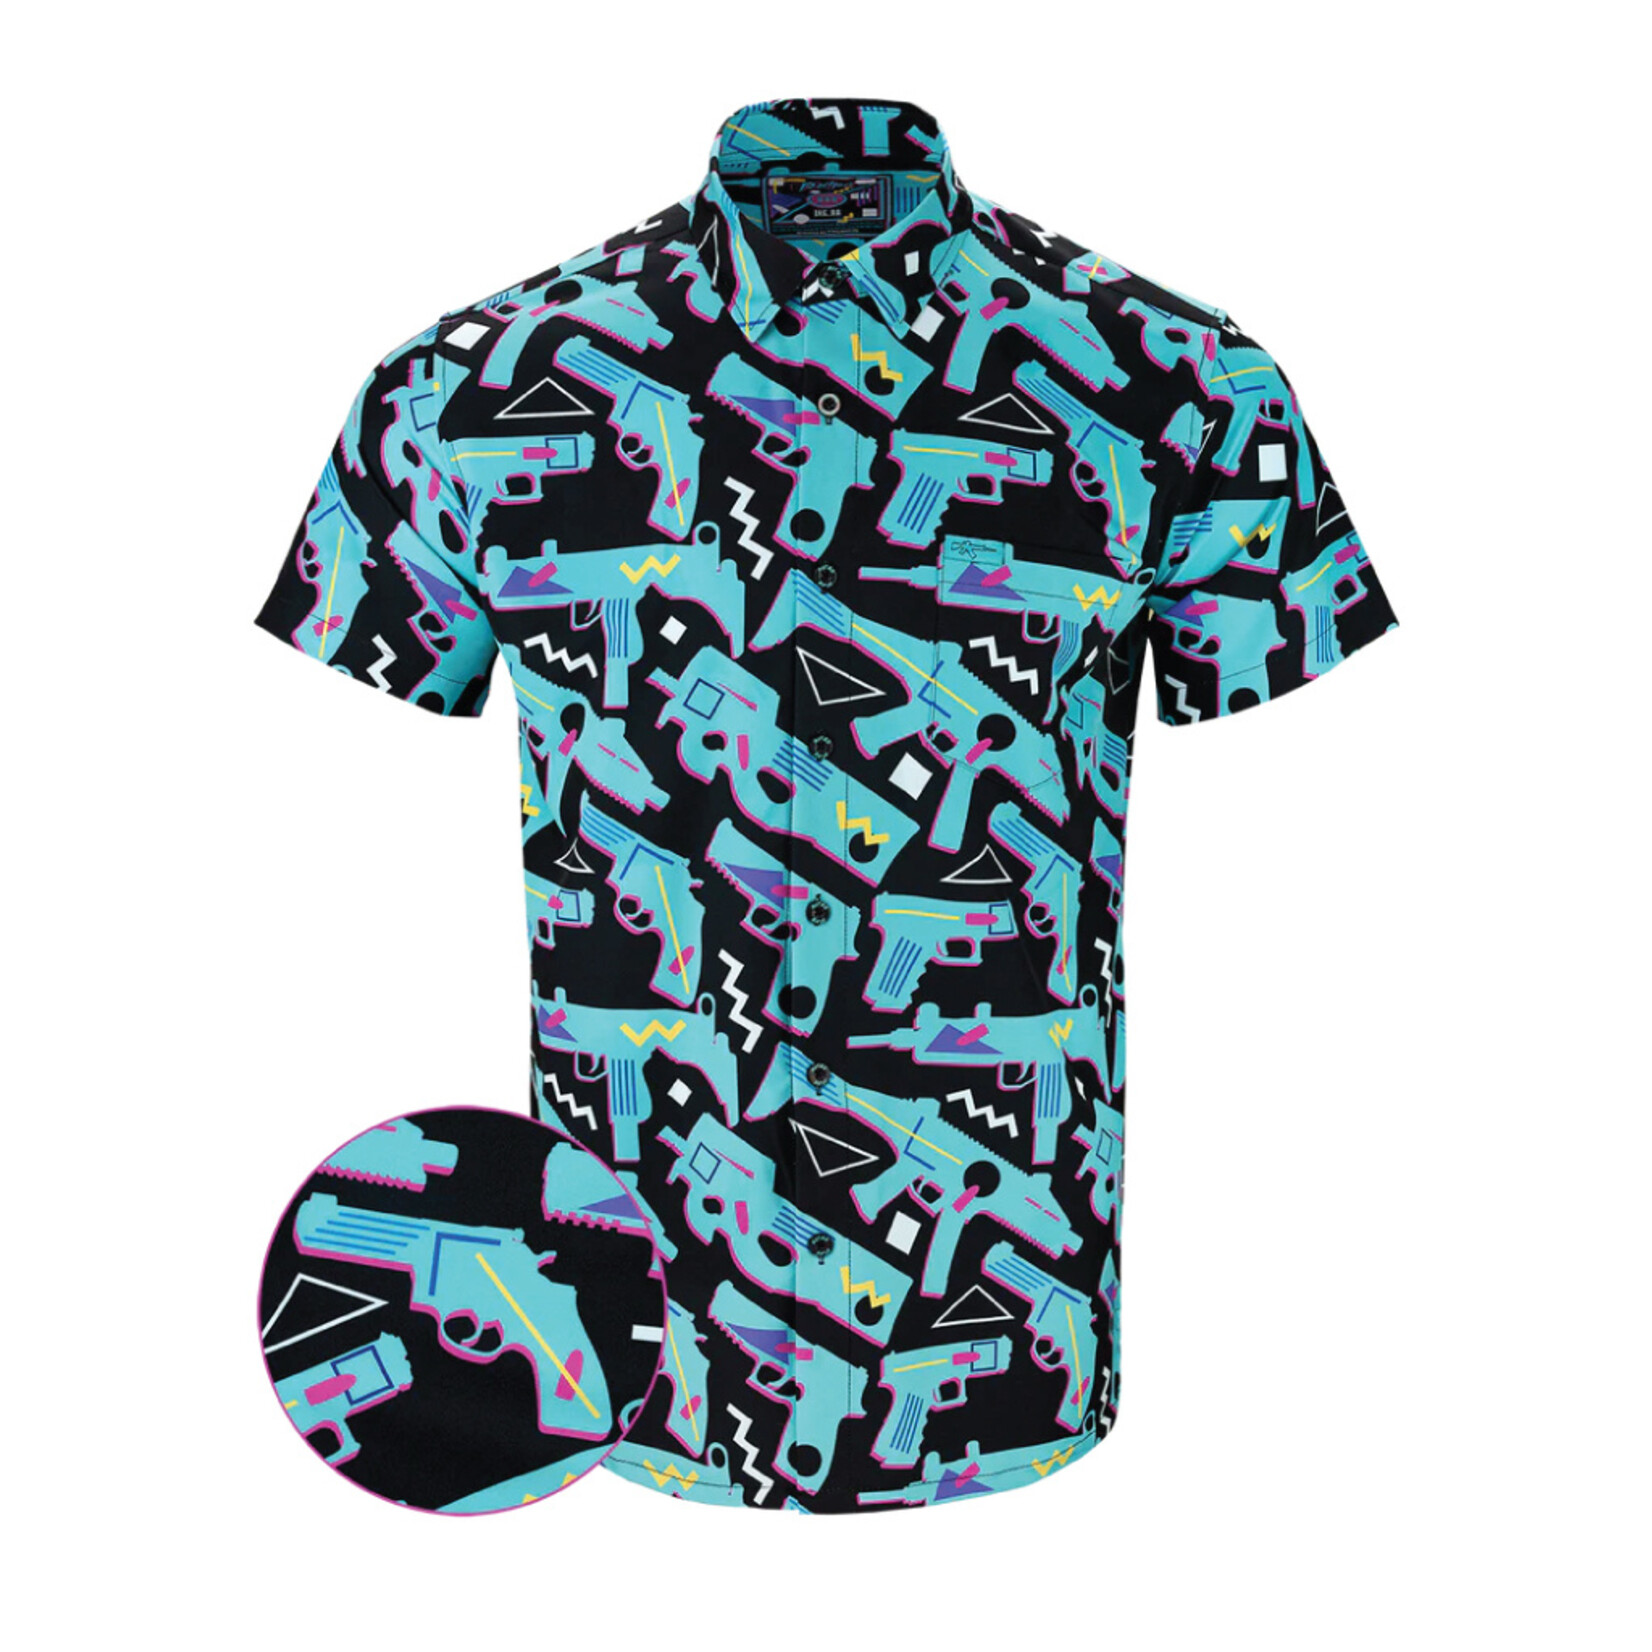 The 80 Hawaiian Shirt